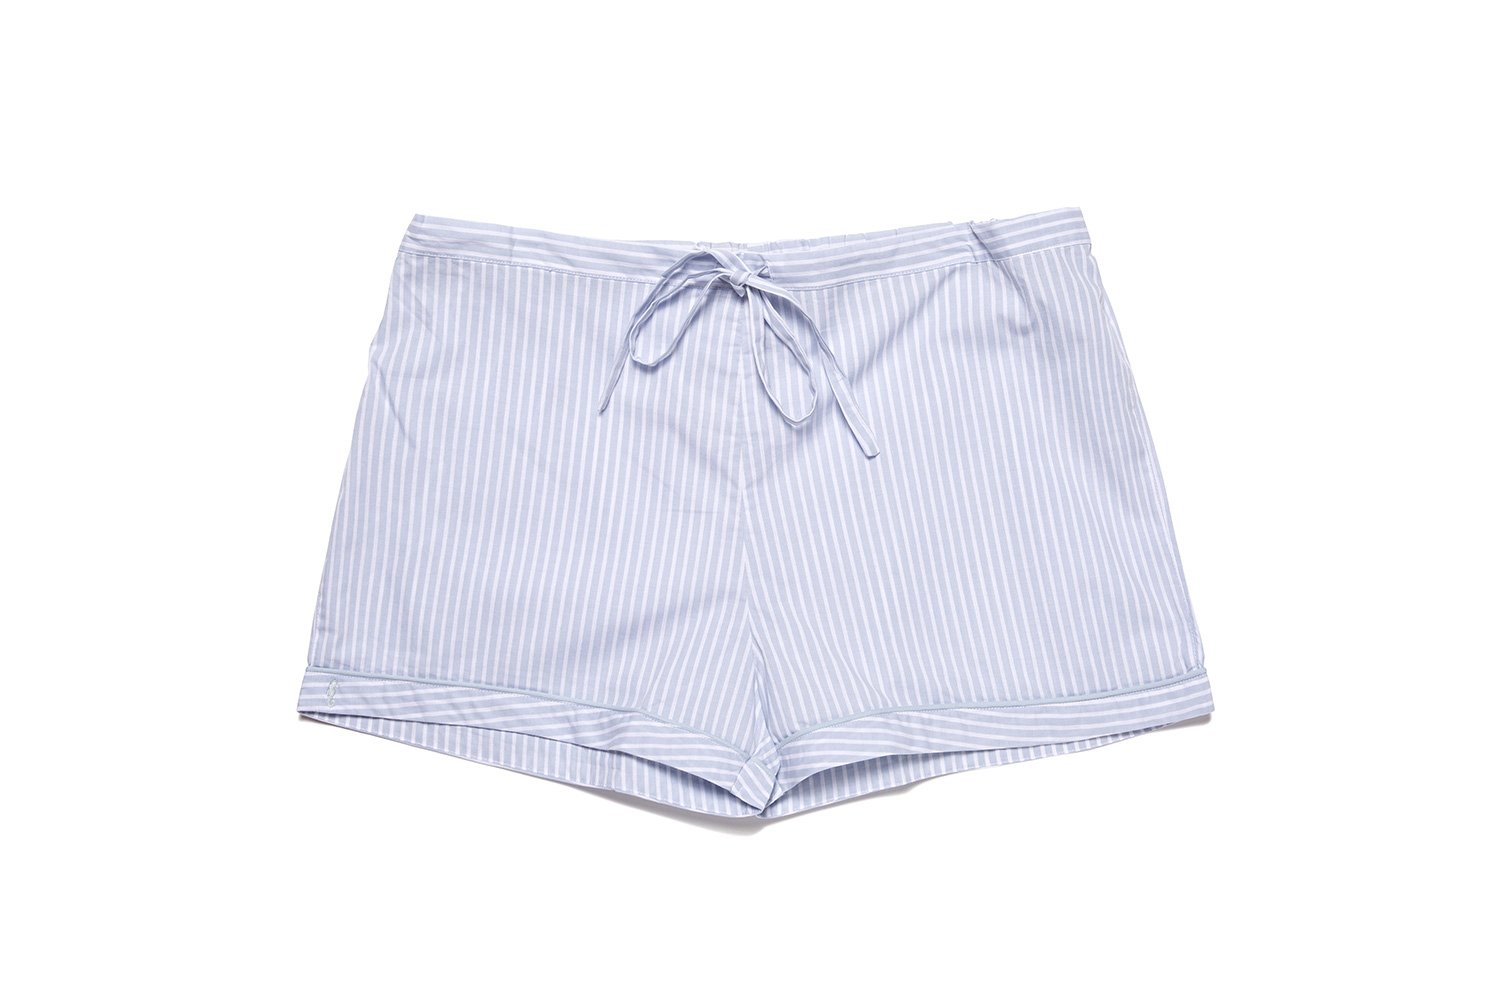 Amboise Short Pajama Set | Marigot Collection